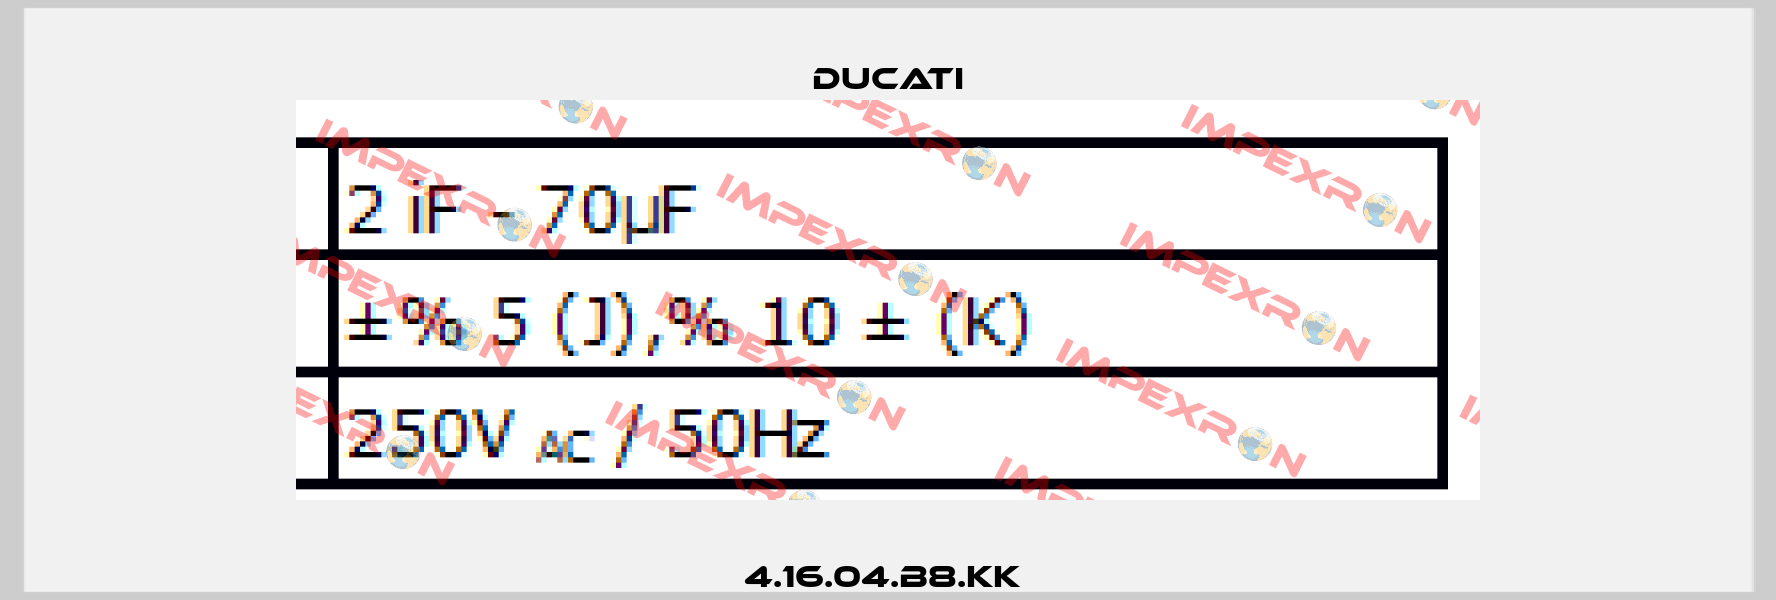 4.16.04.B8.KK  Ducati